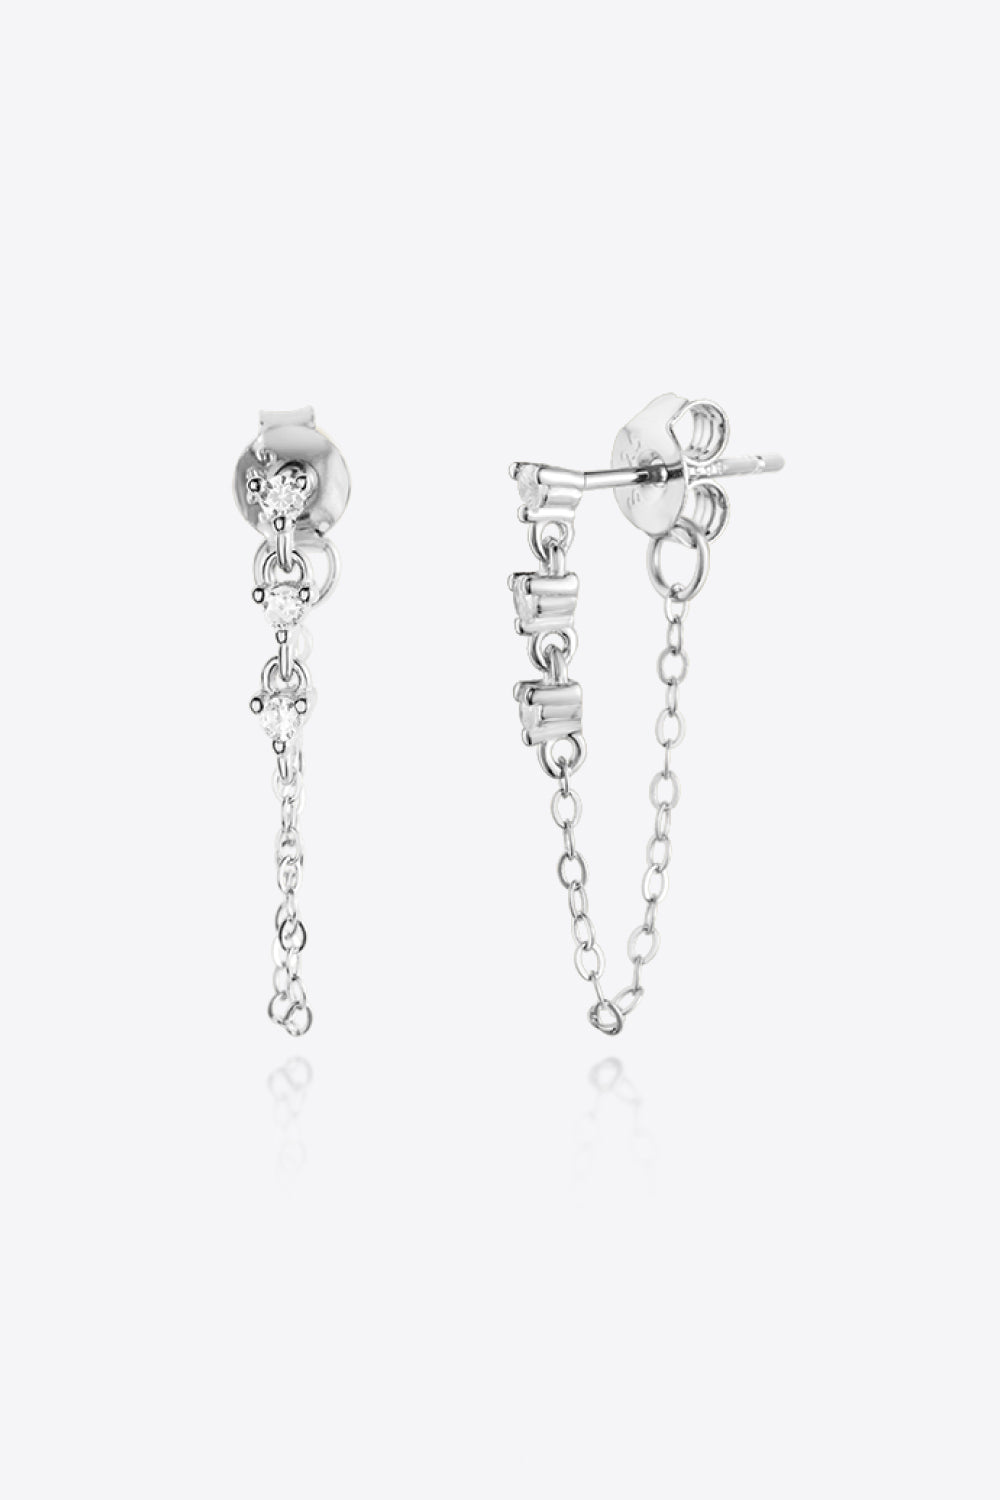 Delicate dropped chain earring Zircon 925 Sterling Silver Chain Earrings